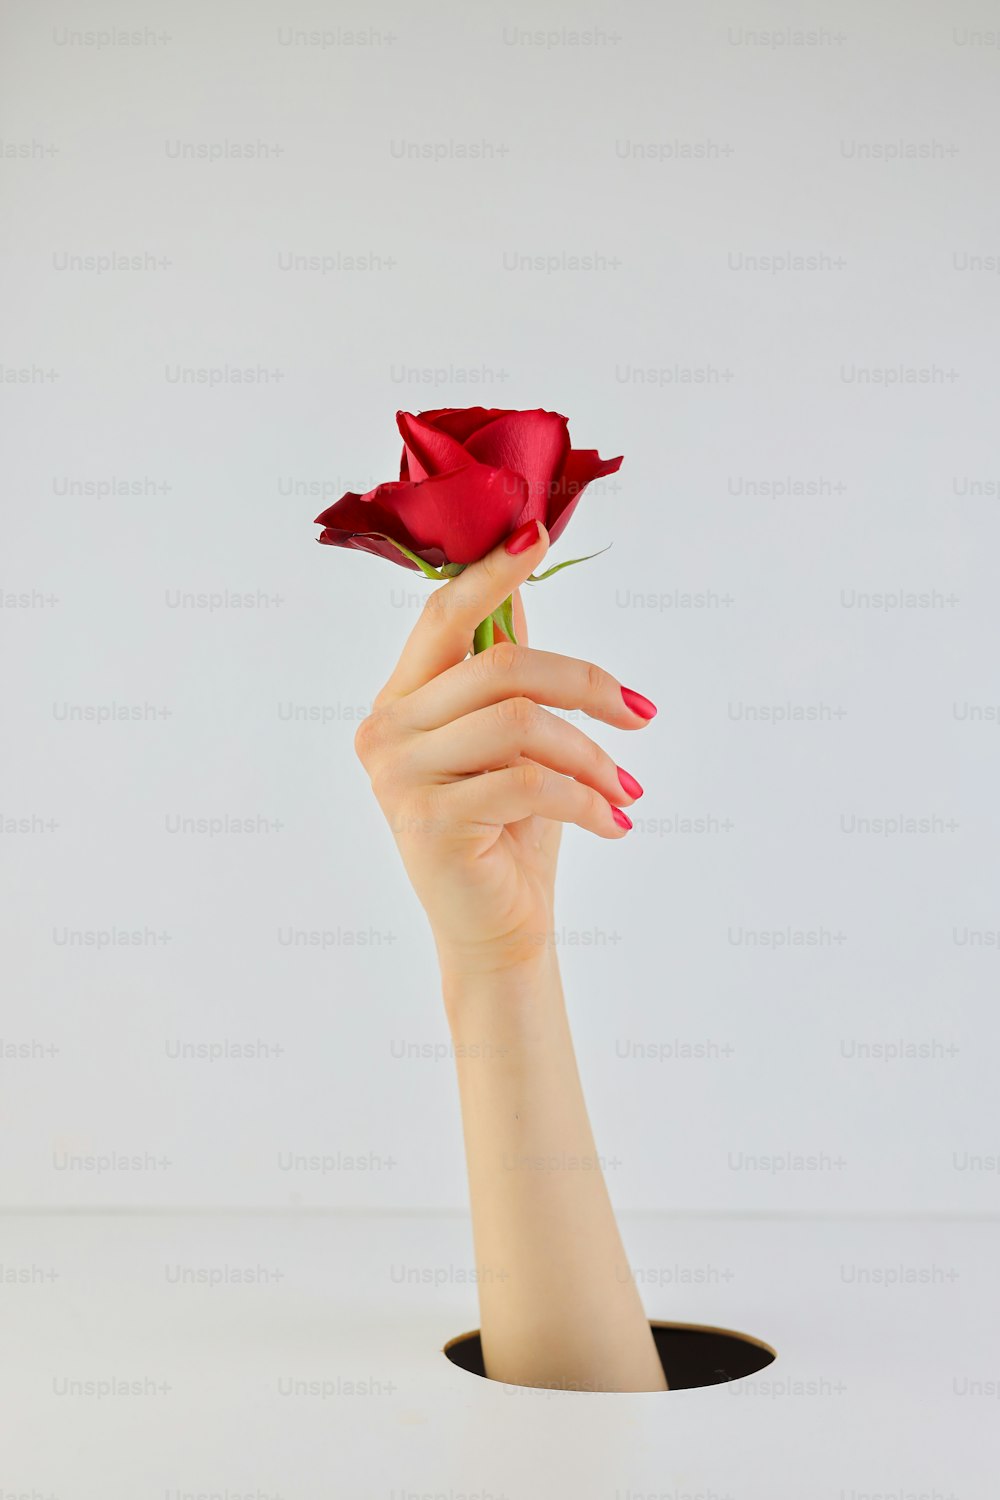 빨간 장미 한 송이를 들고 있는 여자의 손